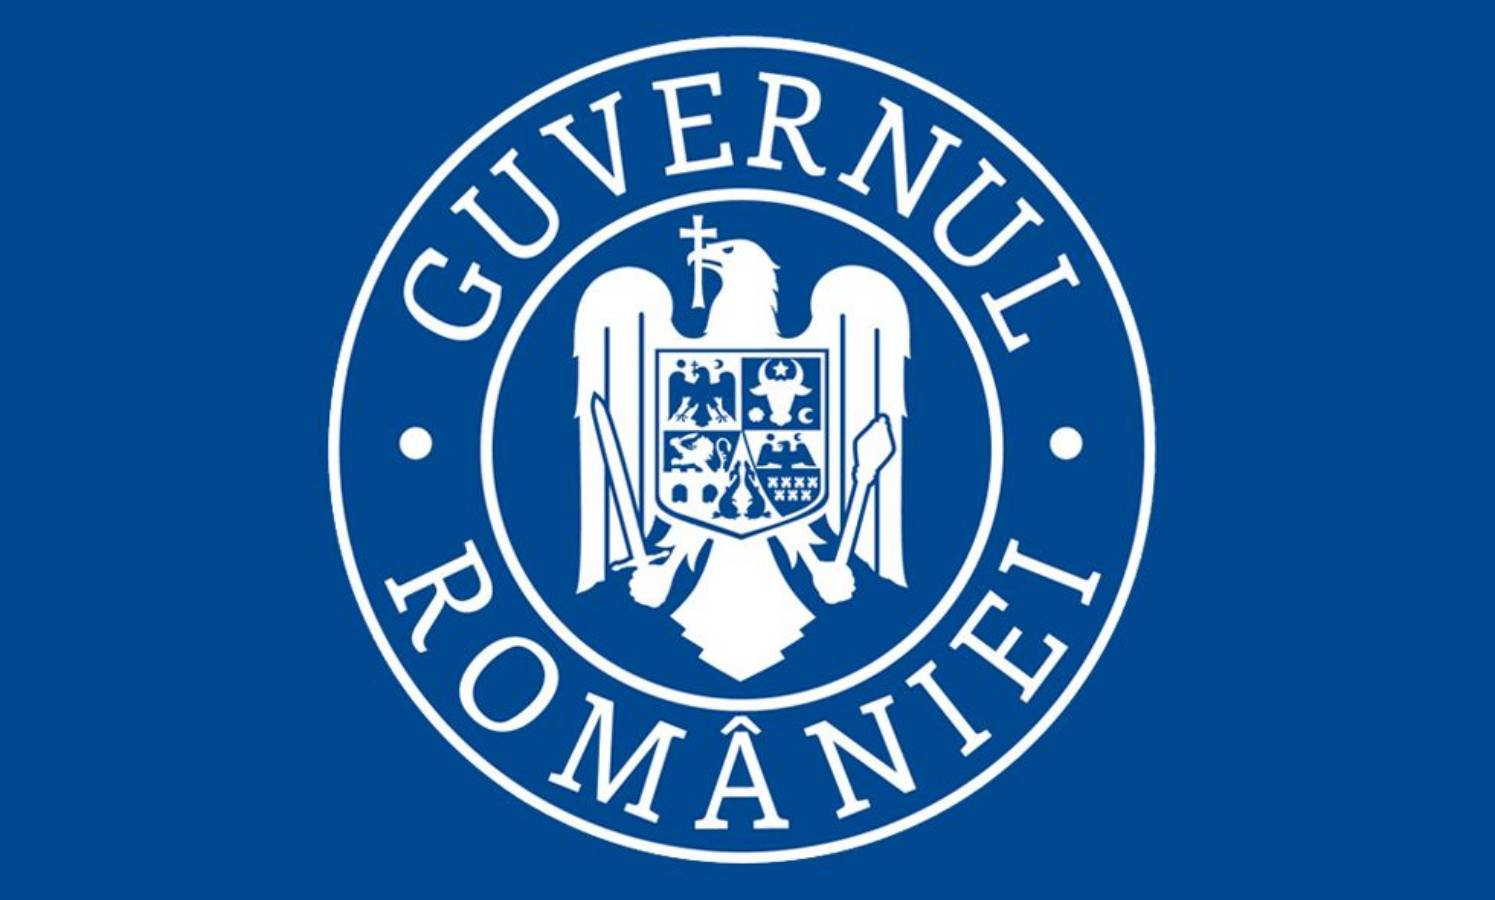 Gobierno rumano 150.000 rumanos pueden vacunarse diariamente